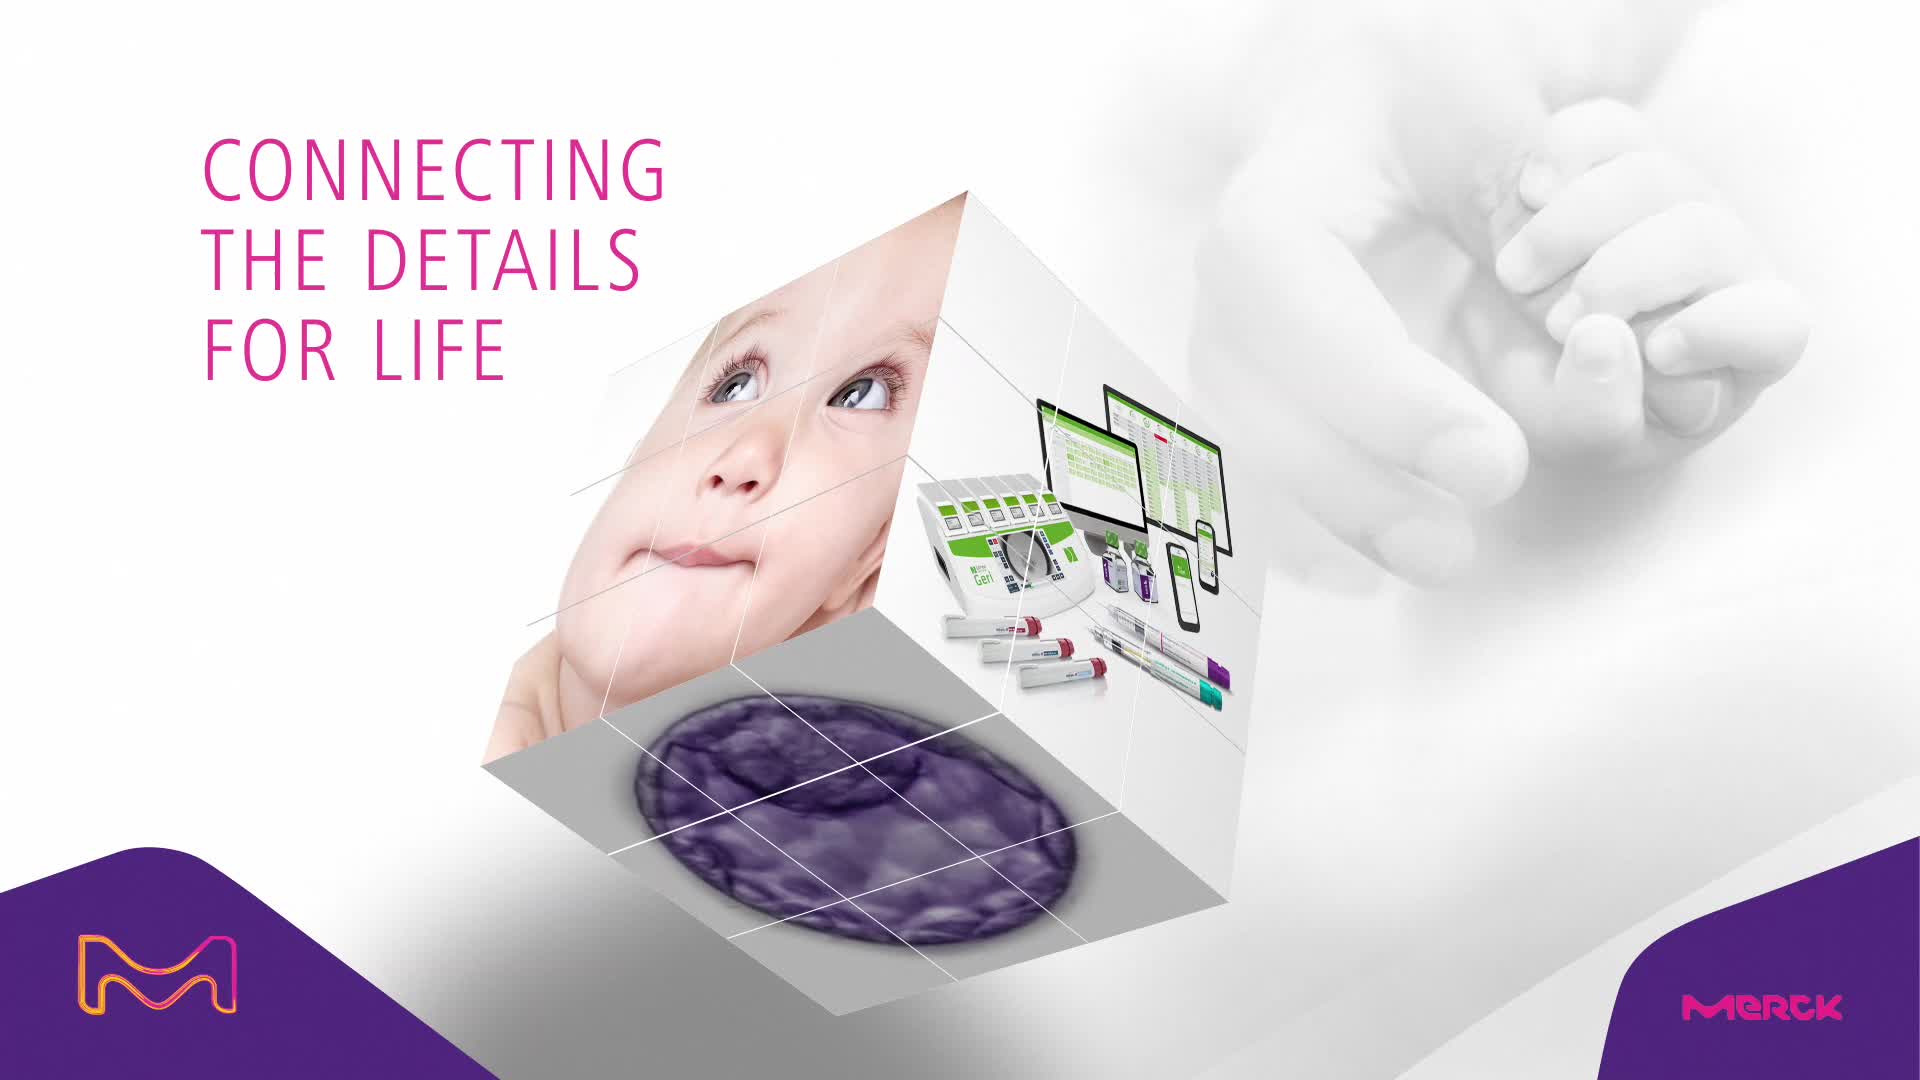 H Merck δημιουργεί την εφαρμογή my fertility για τους Επαγγελματίες Υγείας στον τομέα της Γονιμότητας